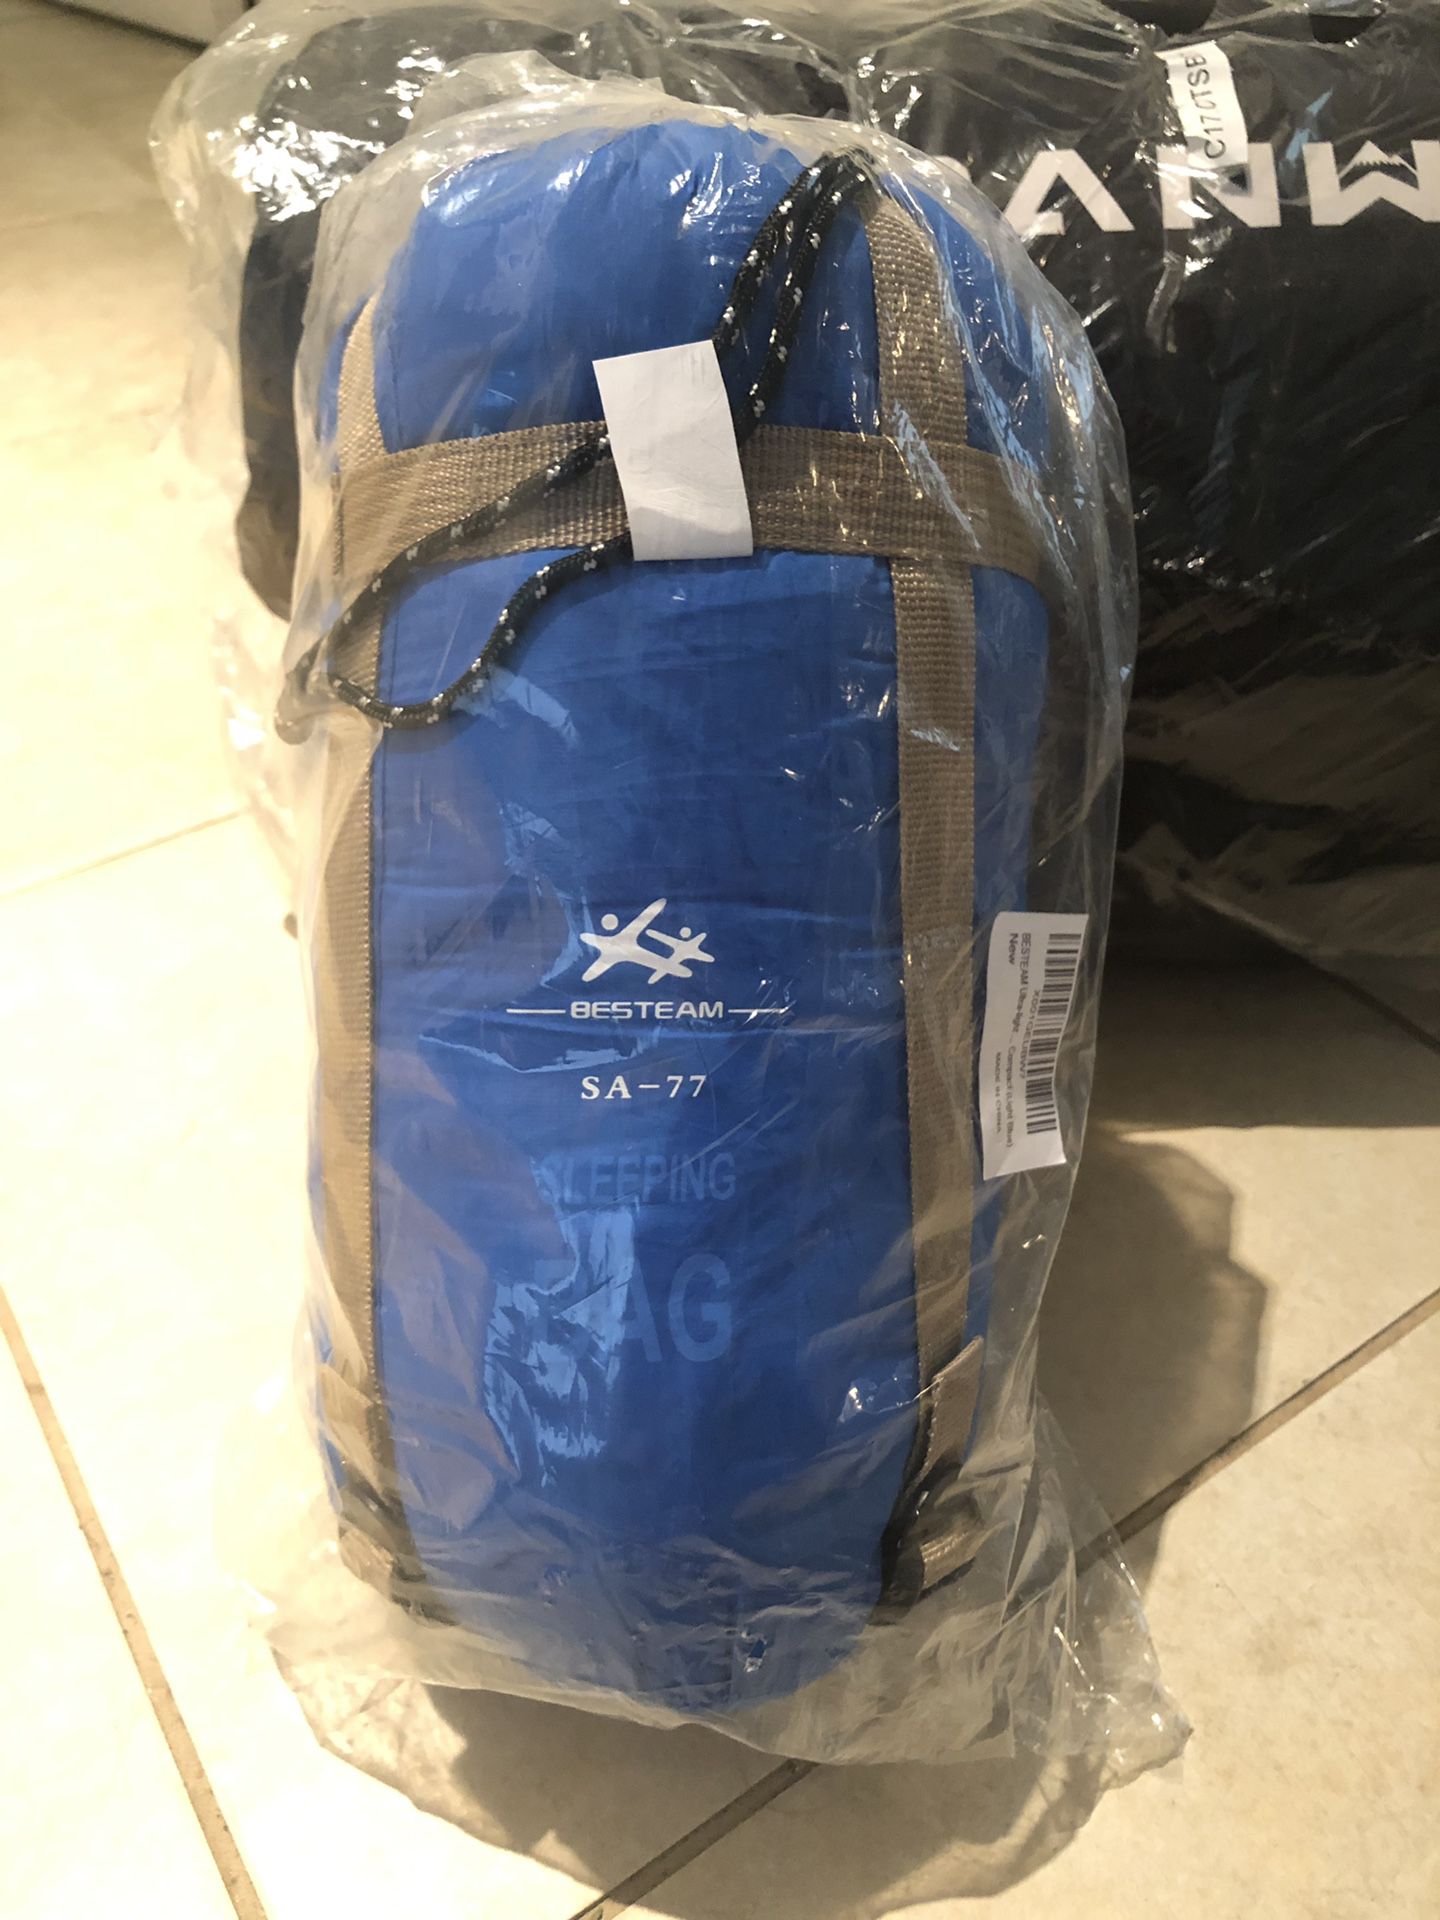 Waterproof sleeping bag